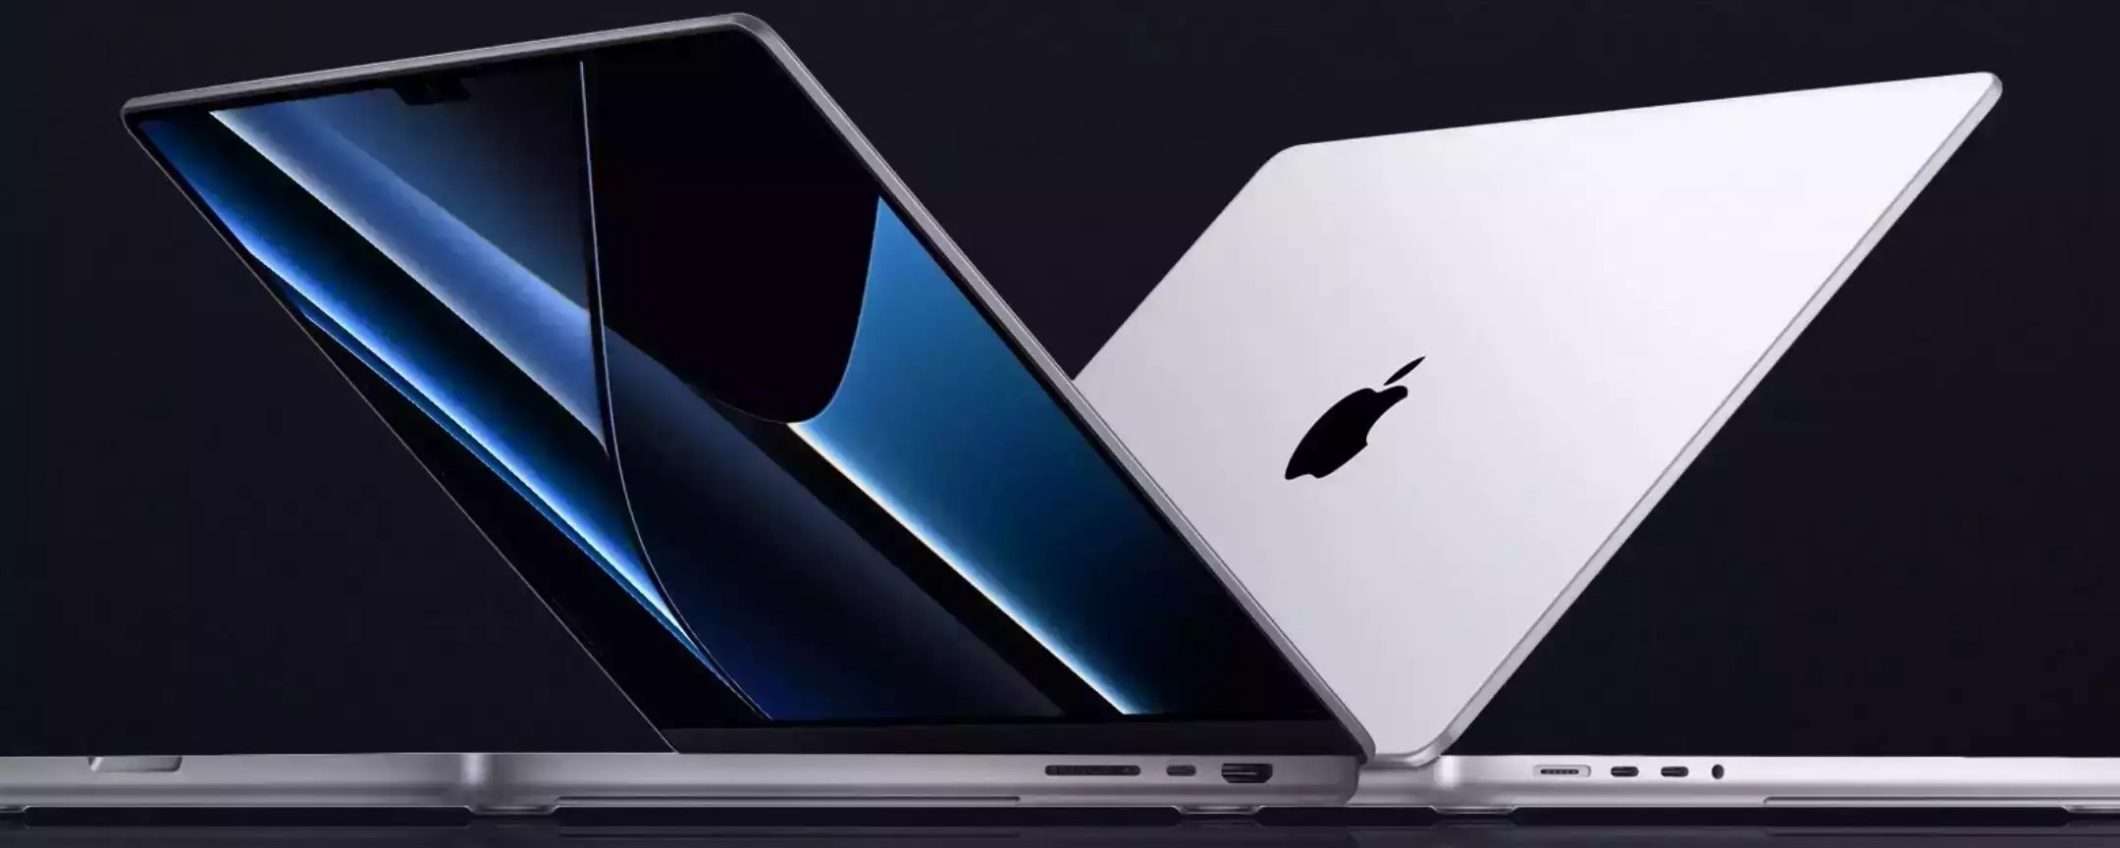 MacBook Pro 16 è l'AFFARE del giorno con quest'offerta (-800€)